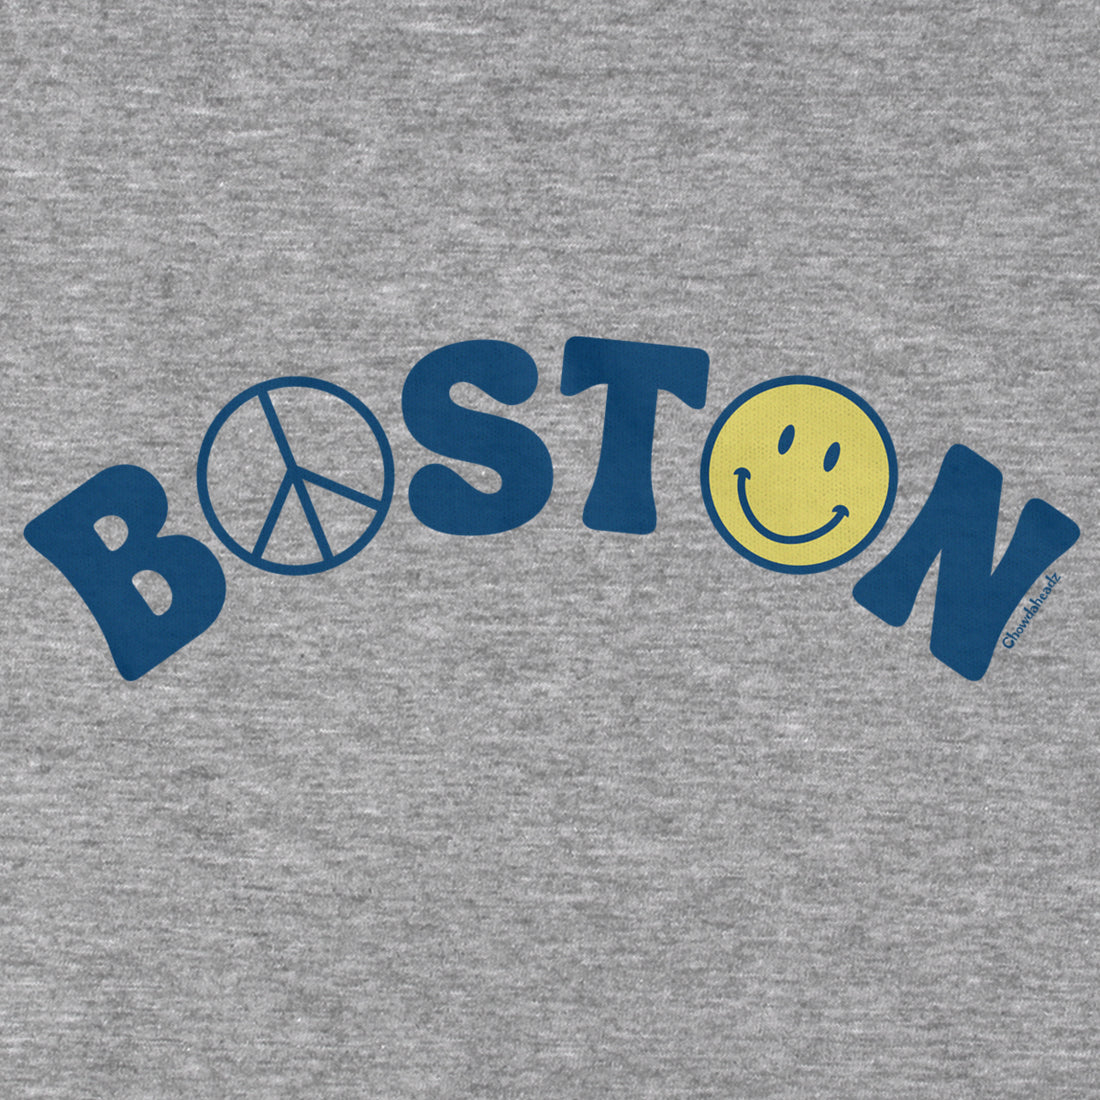 Boston Peace & Happiness T-Shirt - Chowdaheadz